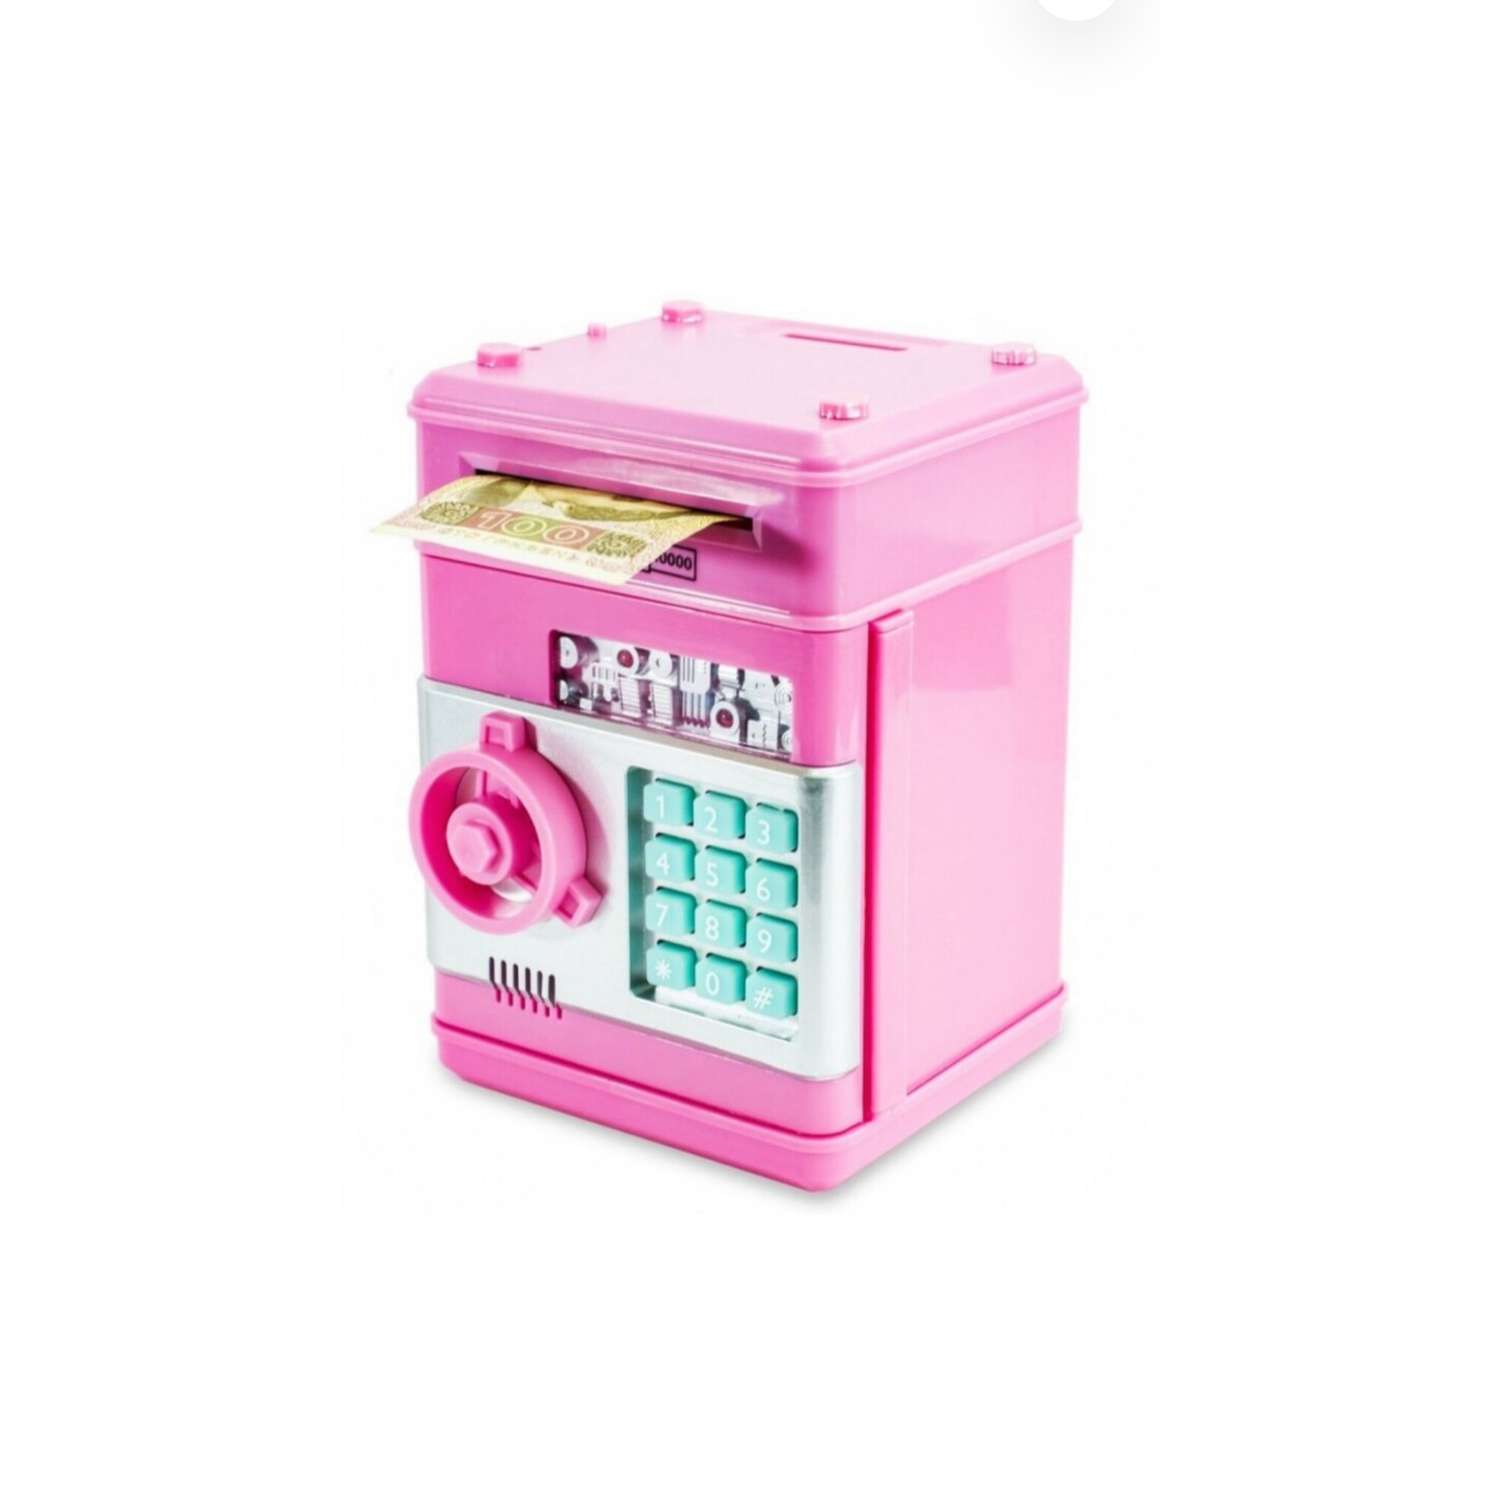 Копилка сейф для денег Эмили детская электронная цвет розовый - фото 1